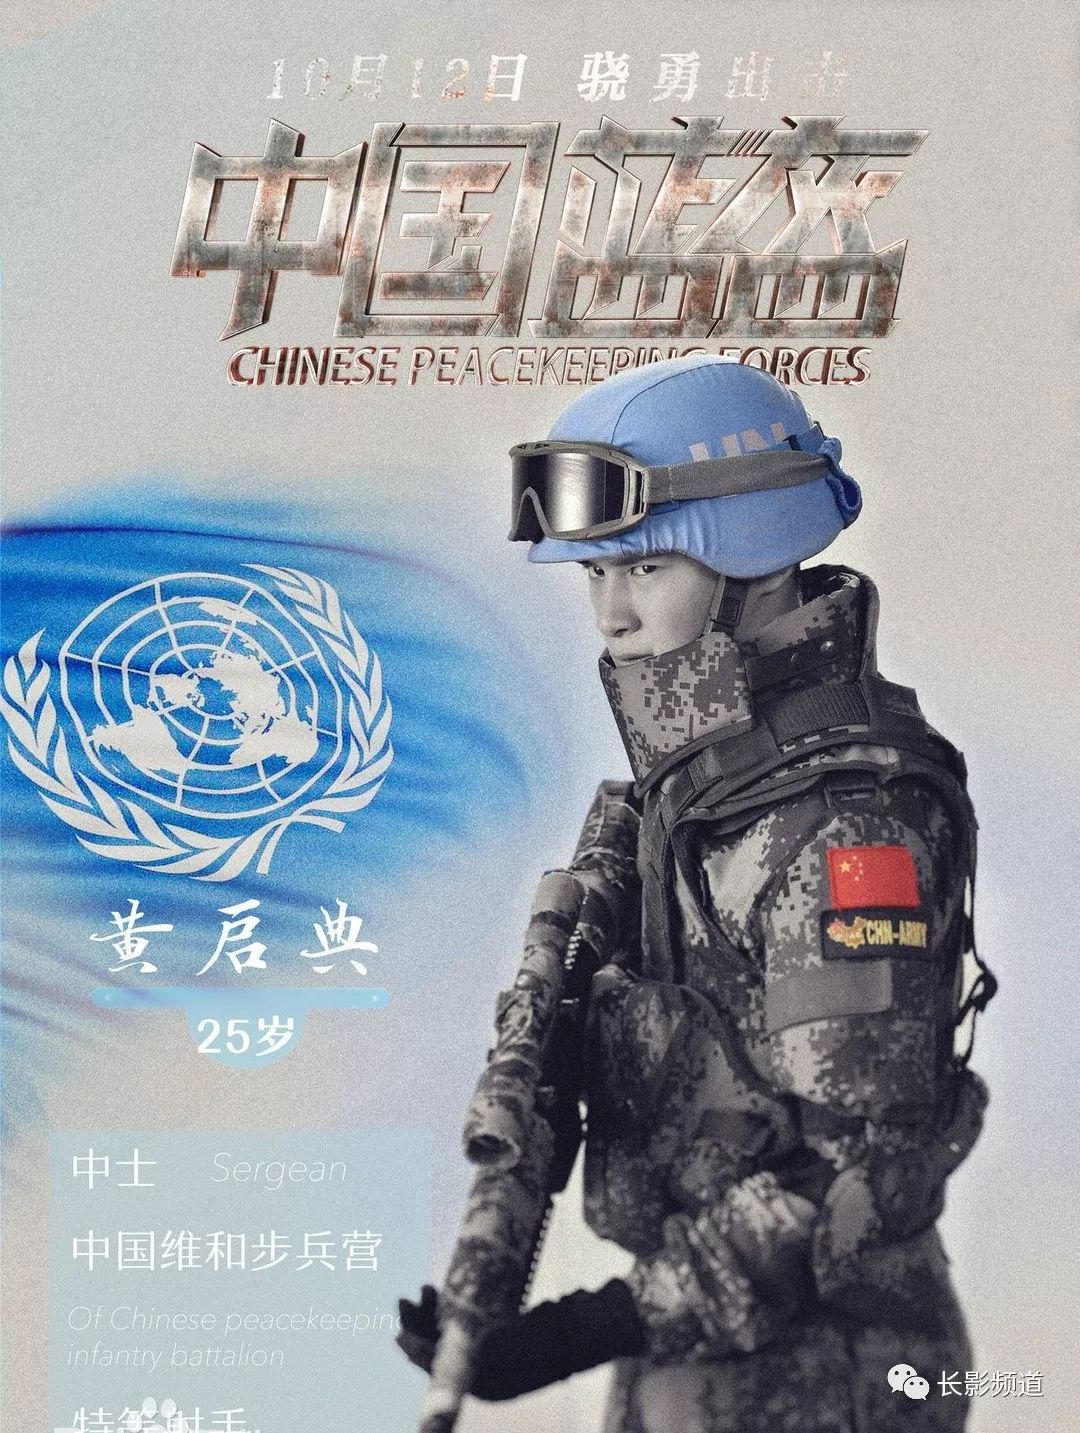 免费观影请你到长影电影院看中国蓝盔